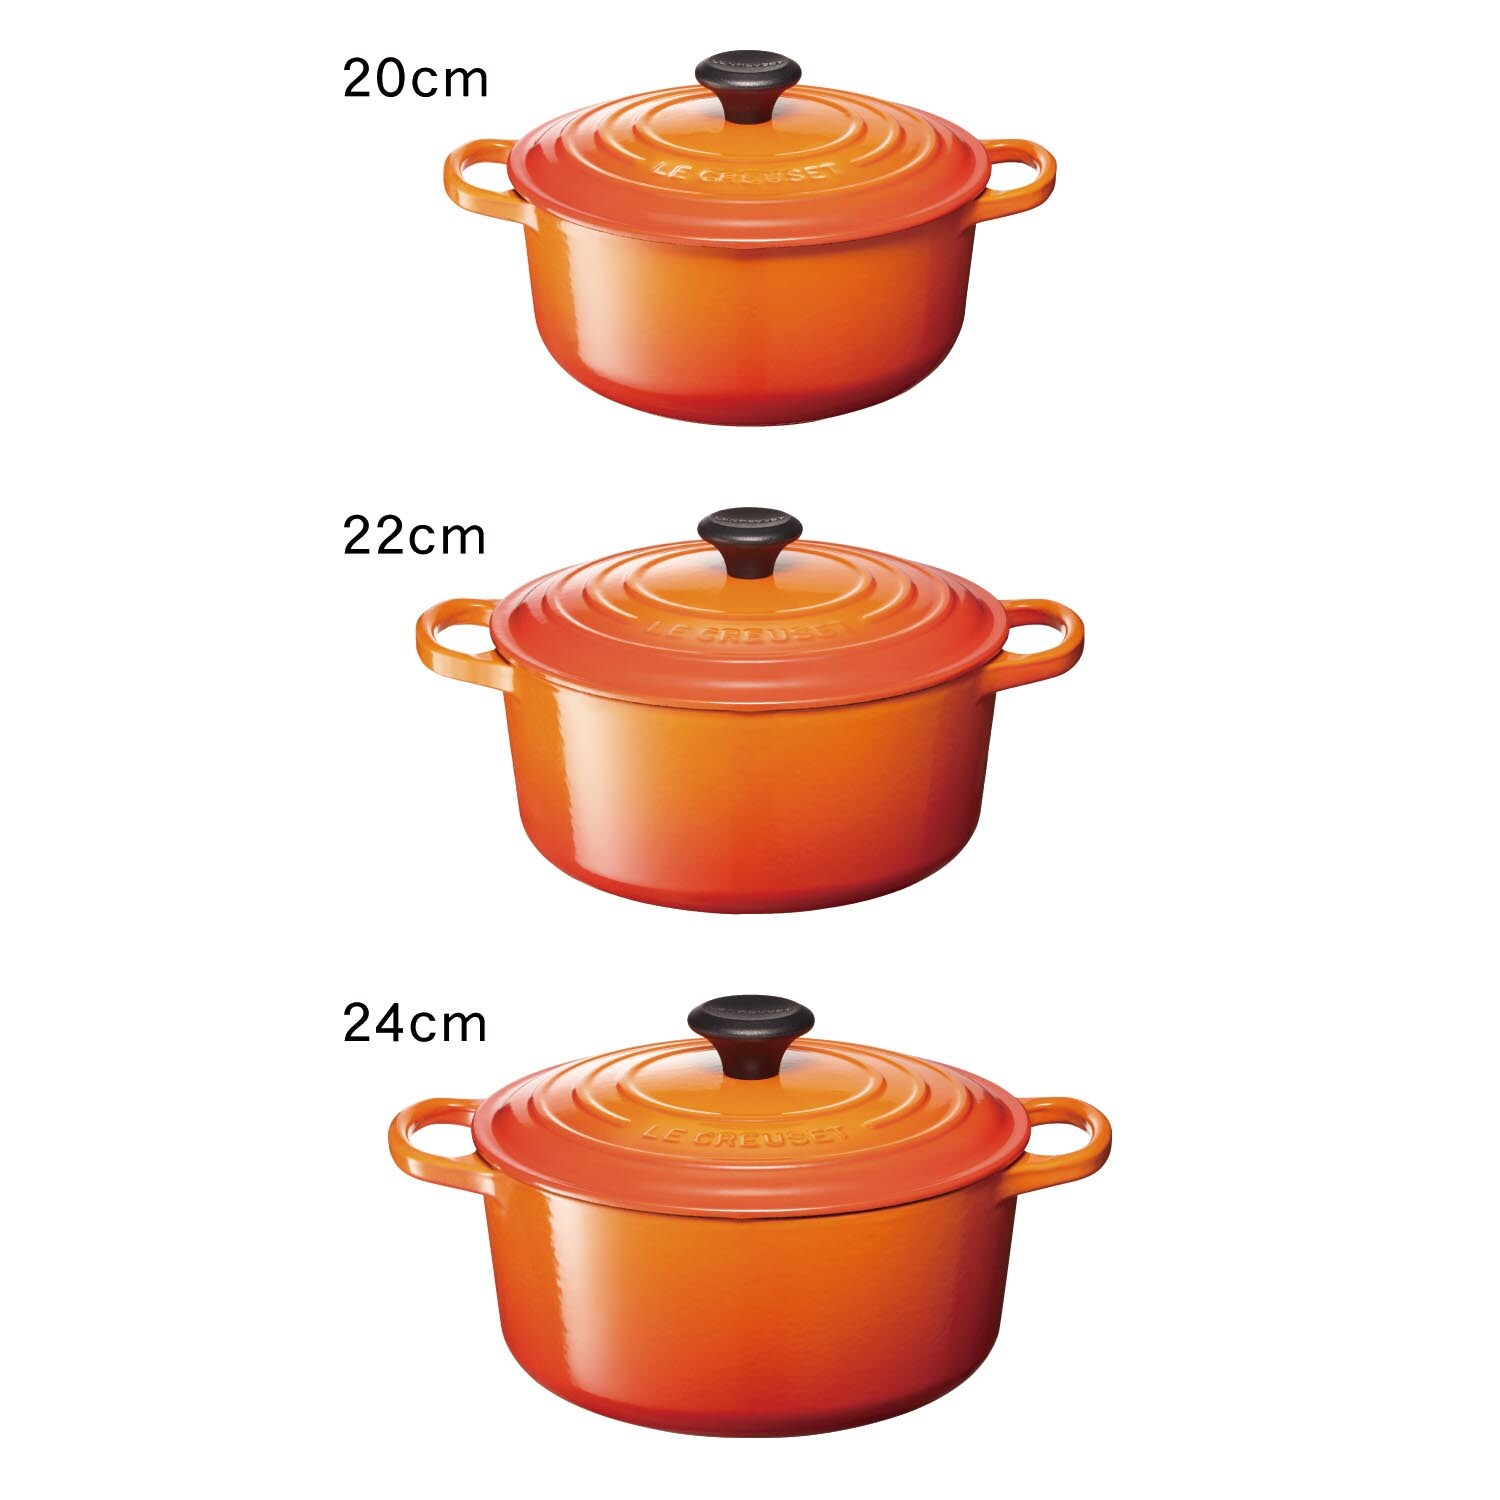 国内先行発売 ルクルーゼ ココットロンド レッド3個、オレンジ3個 22cm 調理器具